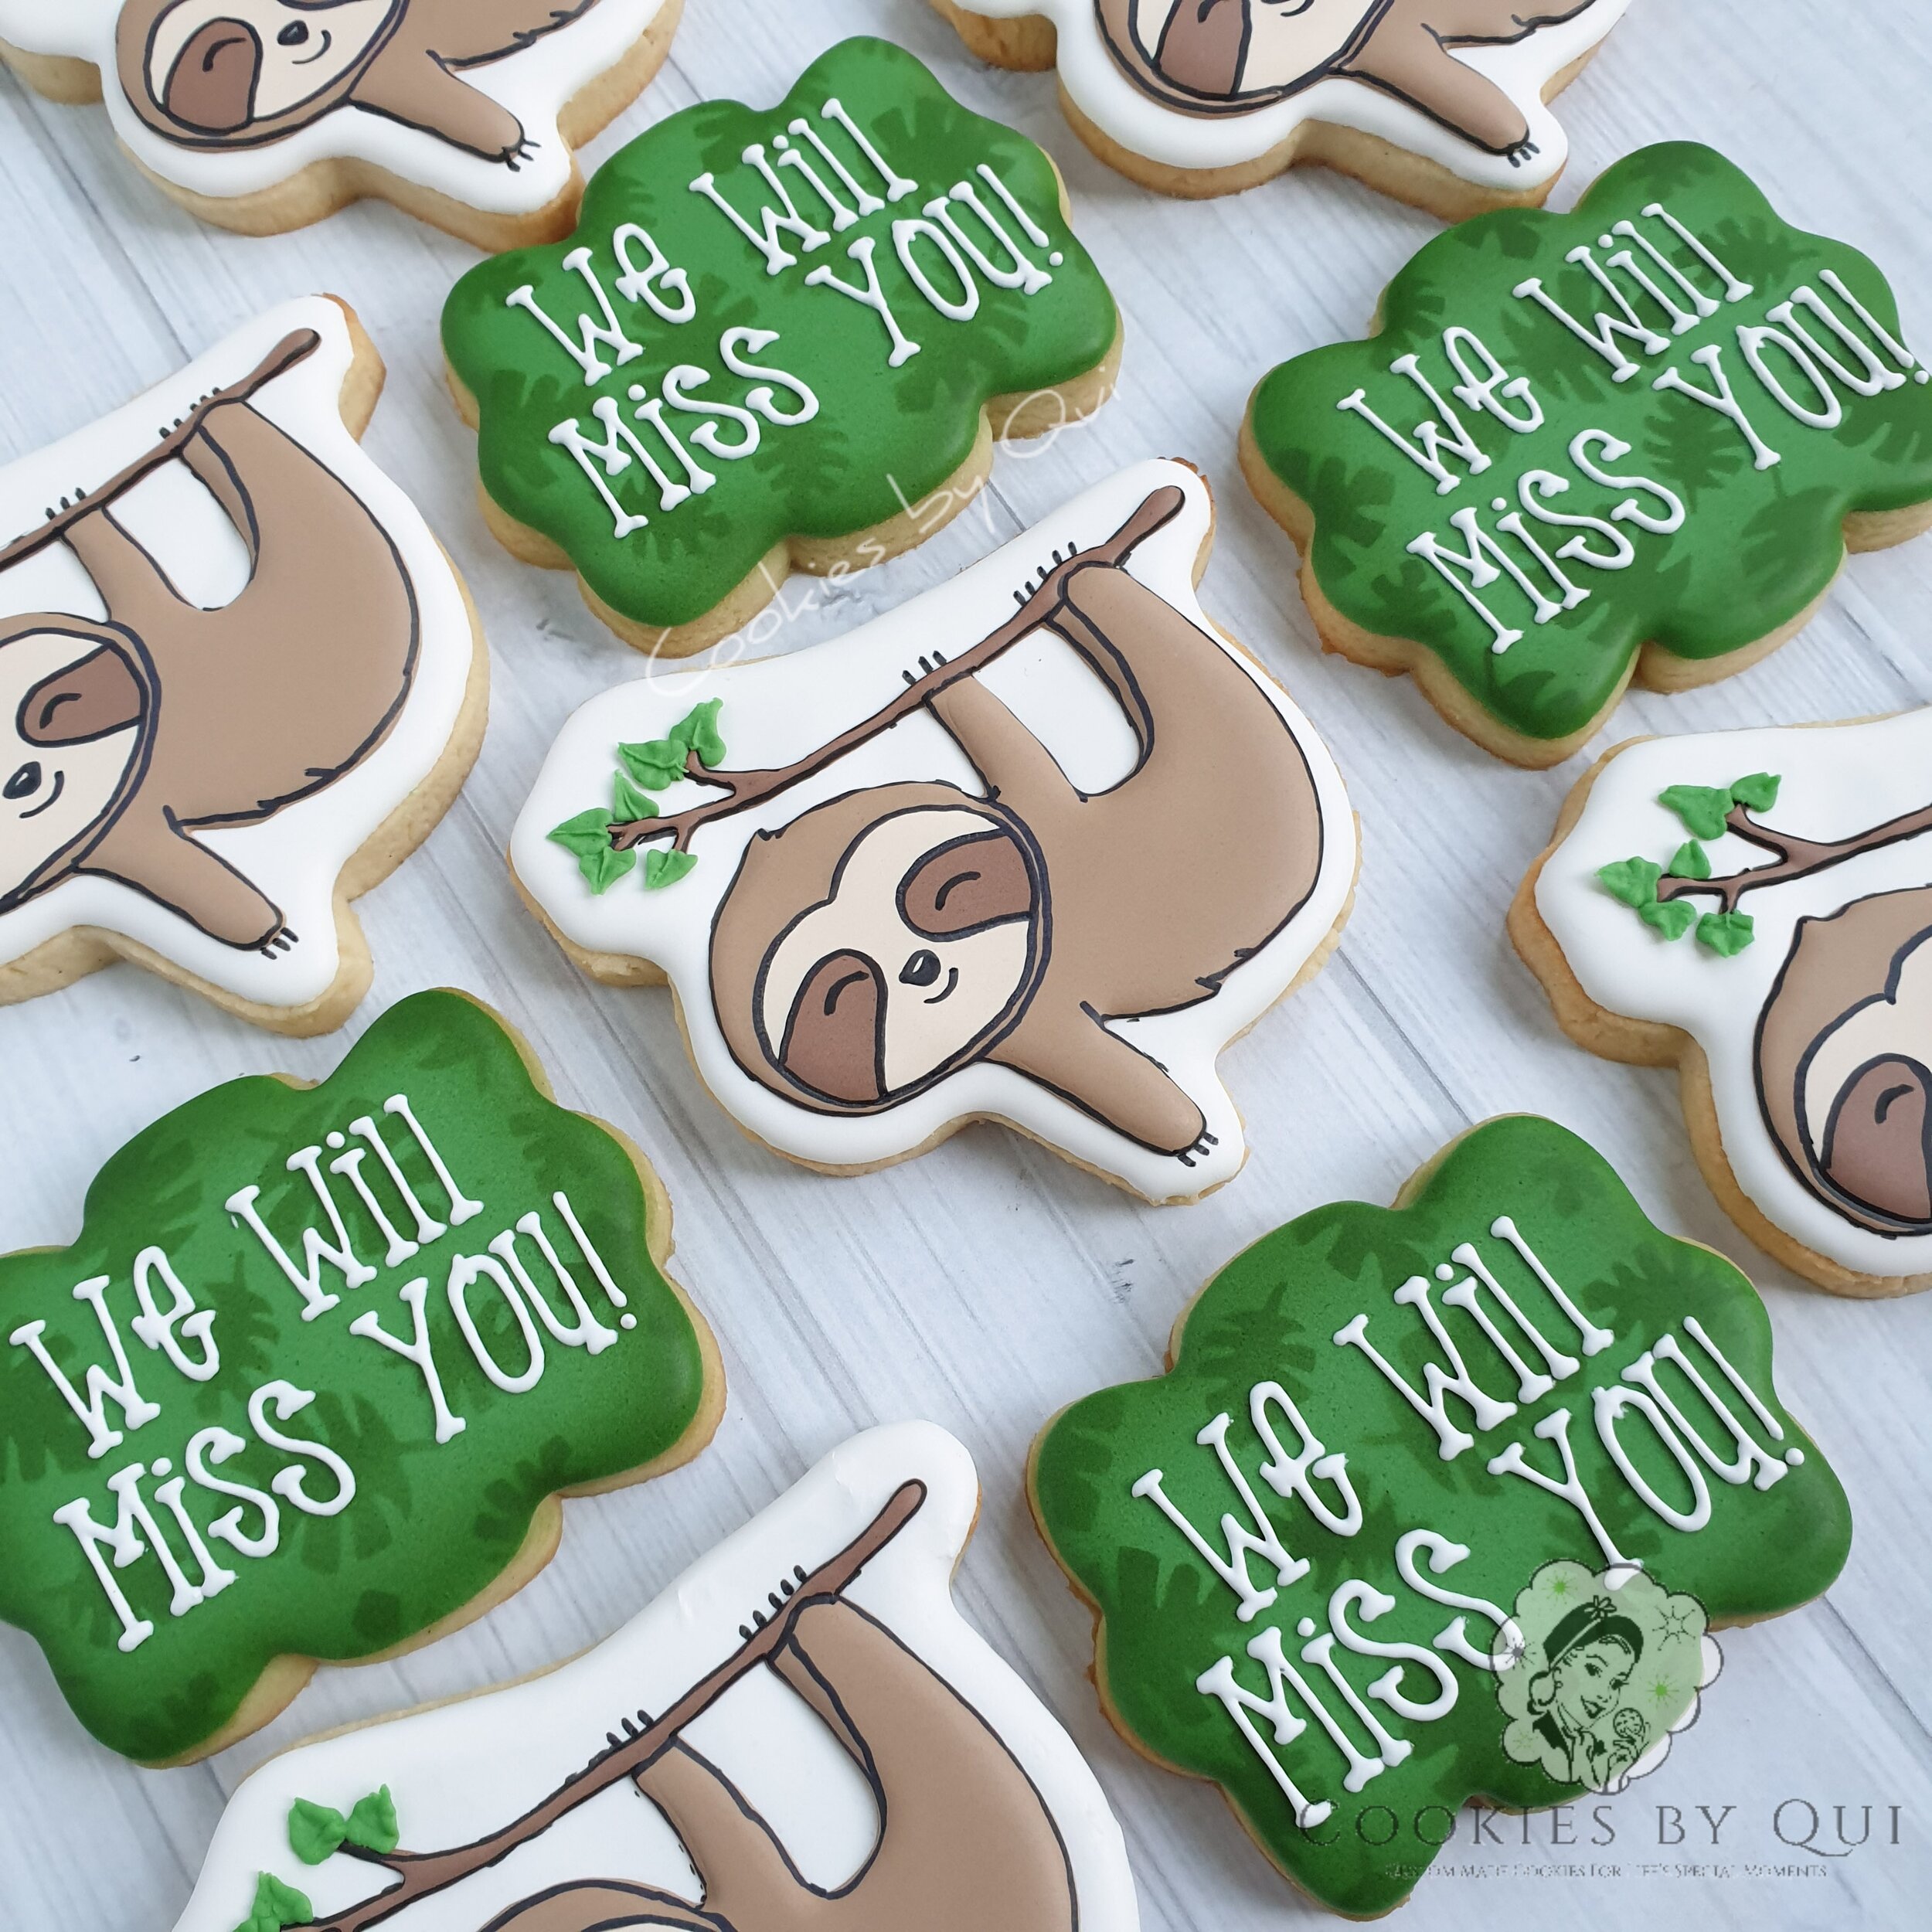 We Will Miss You Sloth Cookies - Cookies by Qui Geelong.jpg